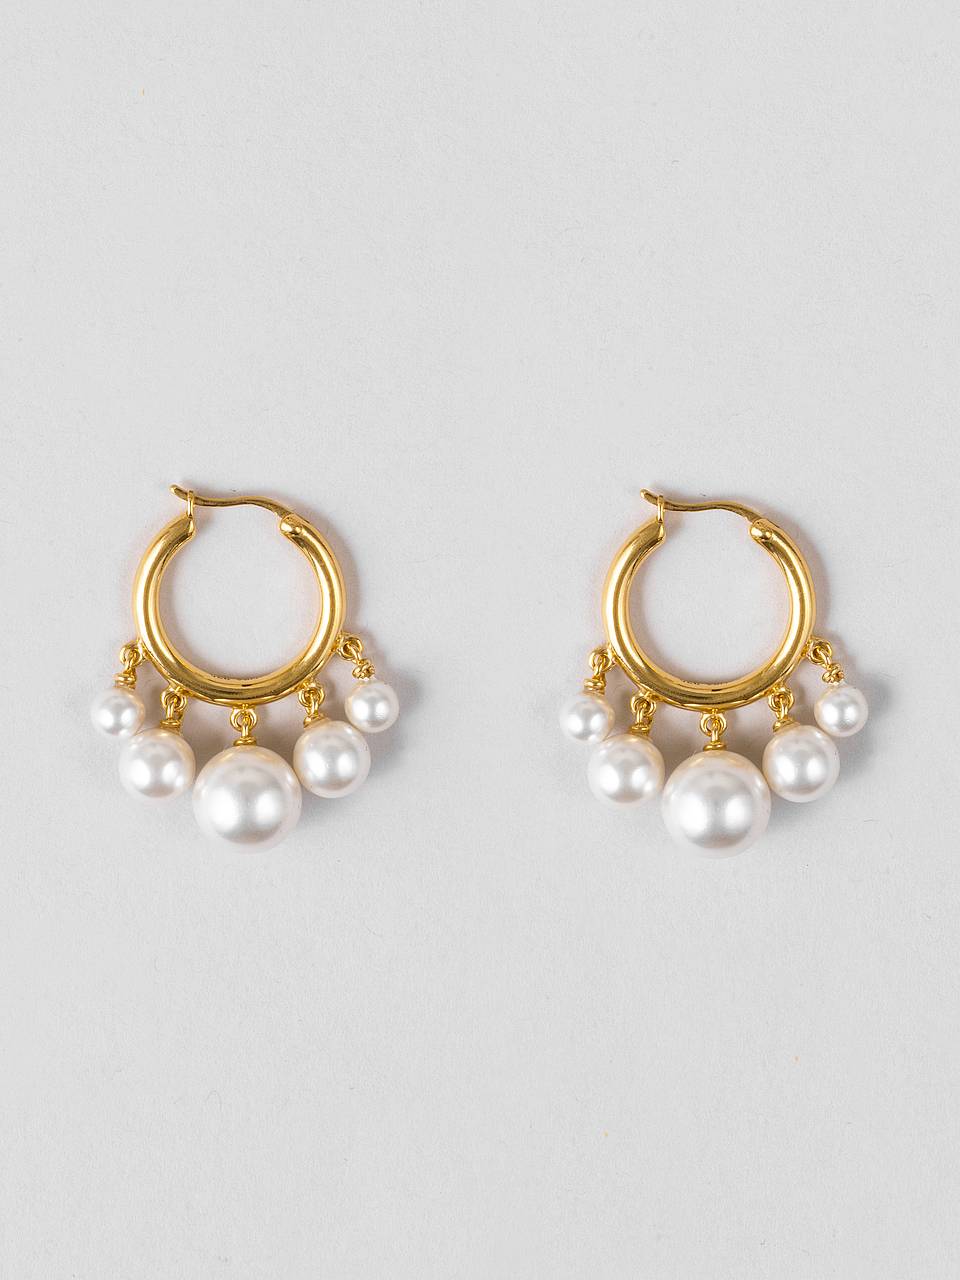 All Pearls Earrings